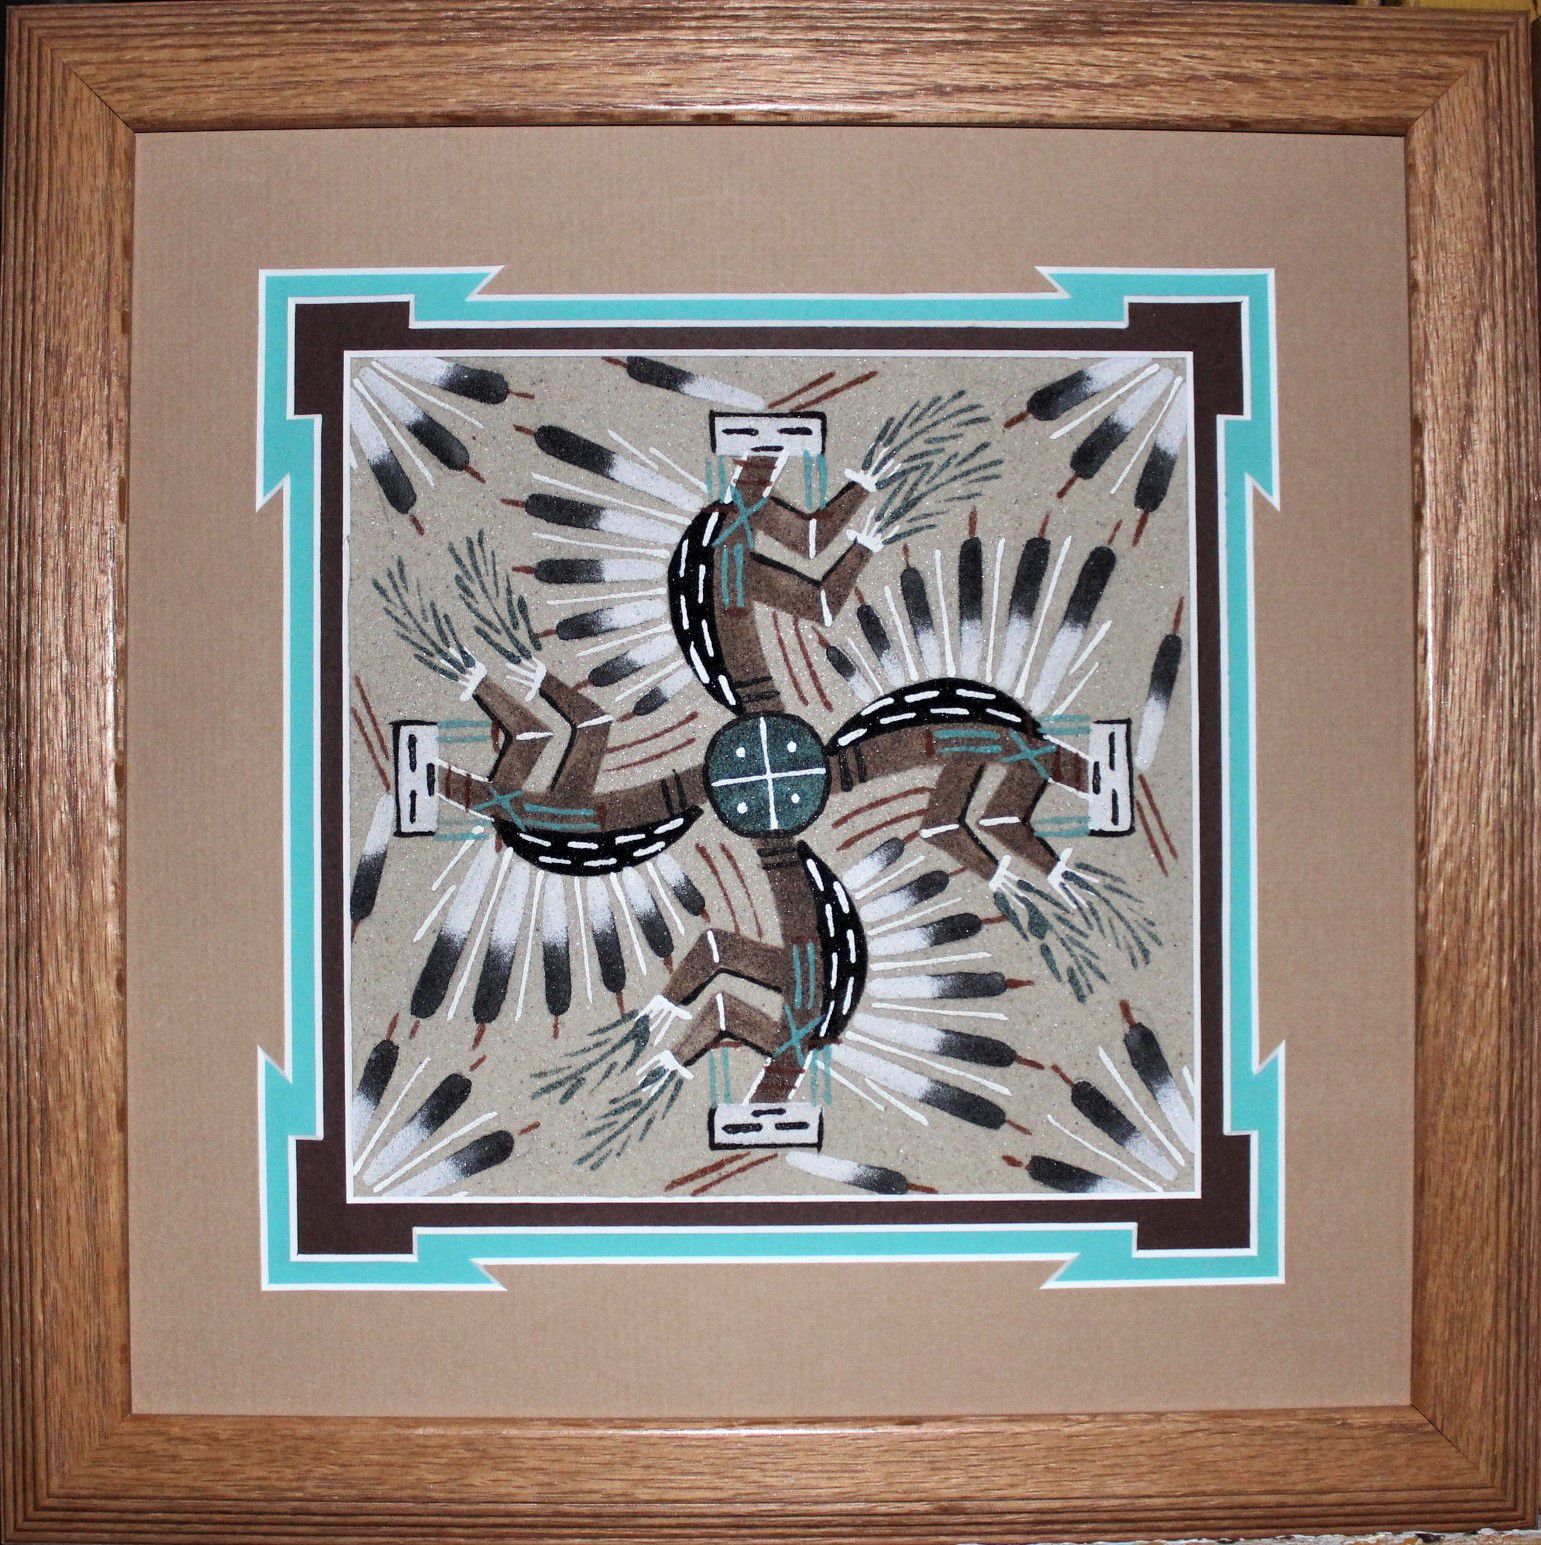 La maison du bison : Lire une peinture de sable navajo - Peinture aborigène